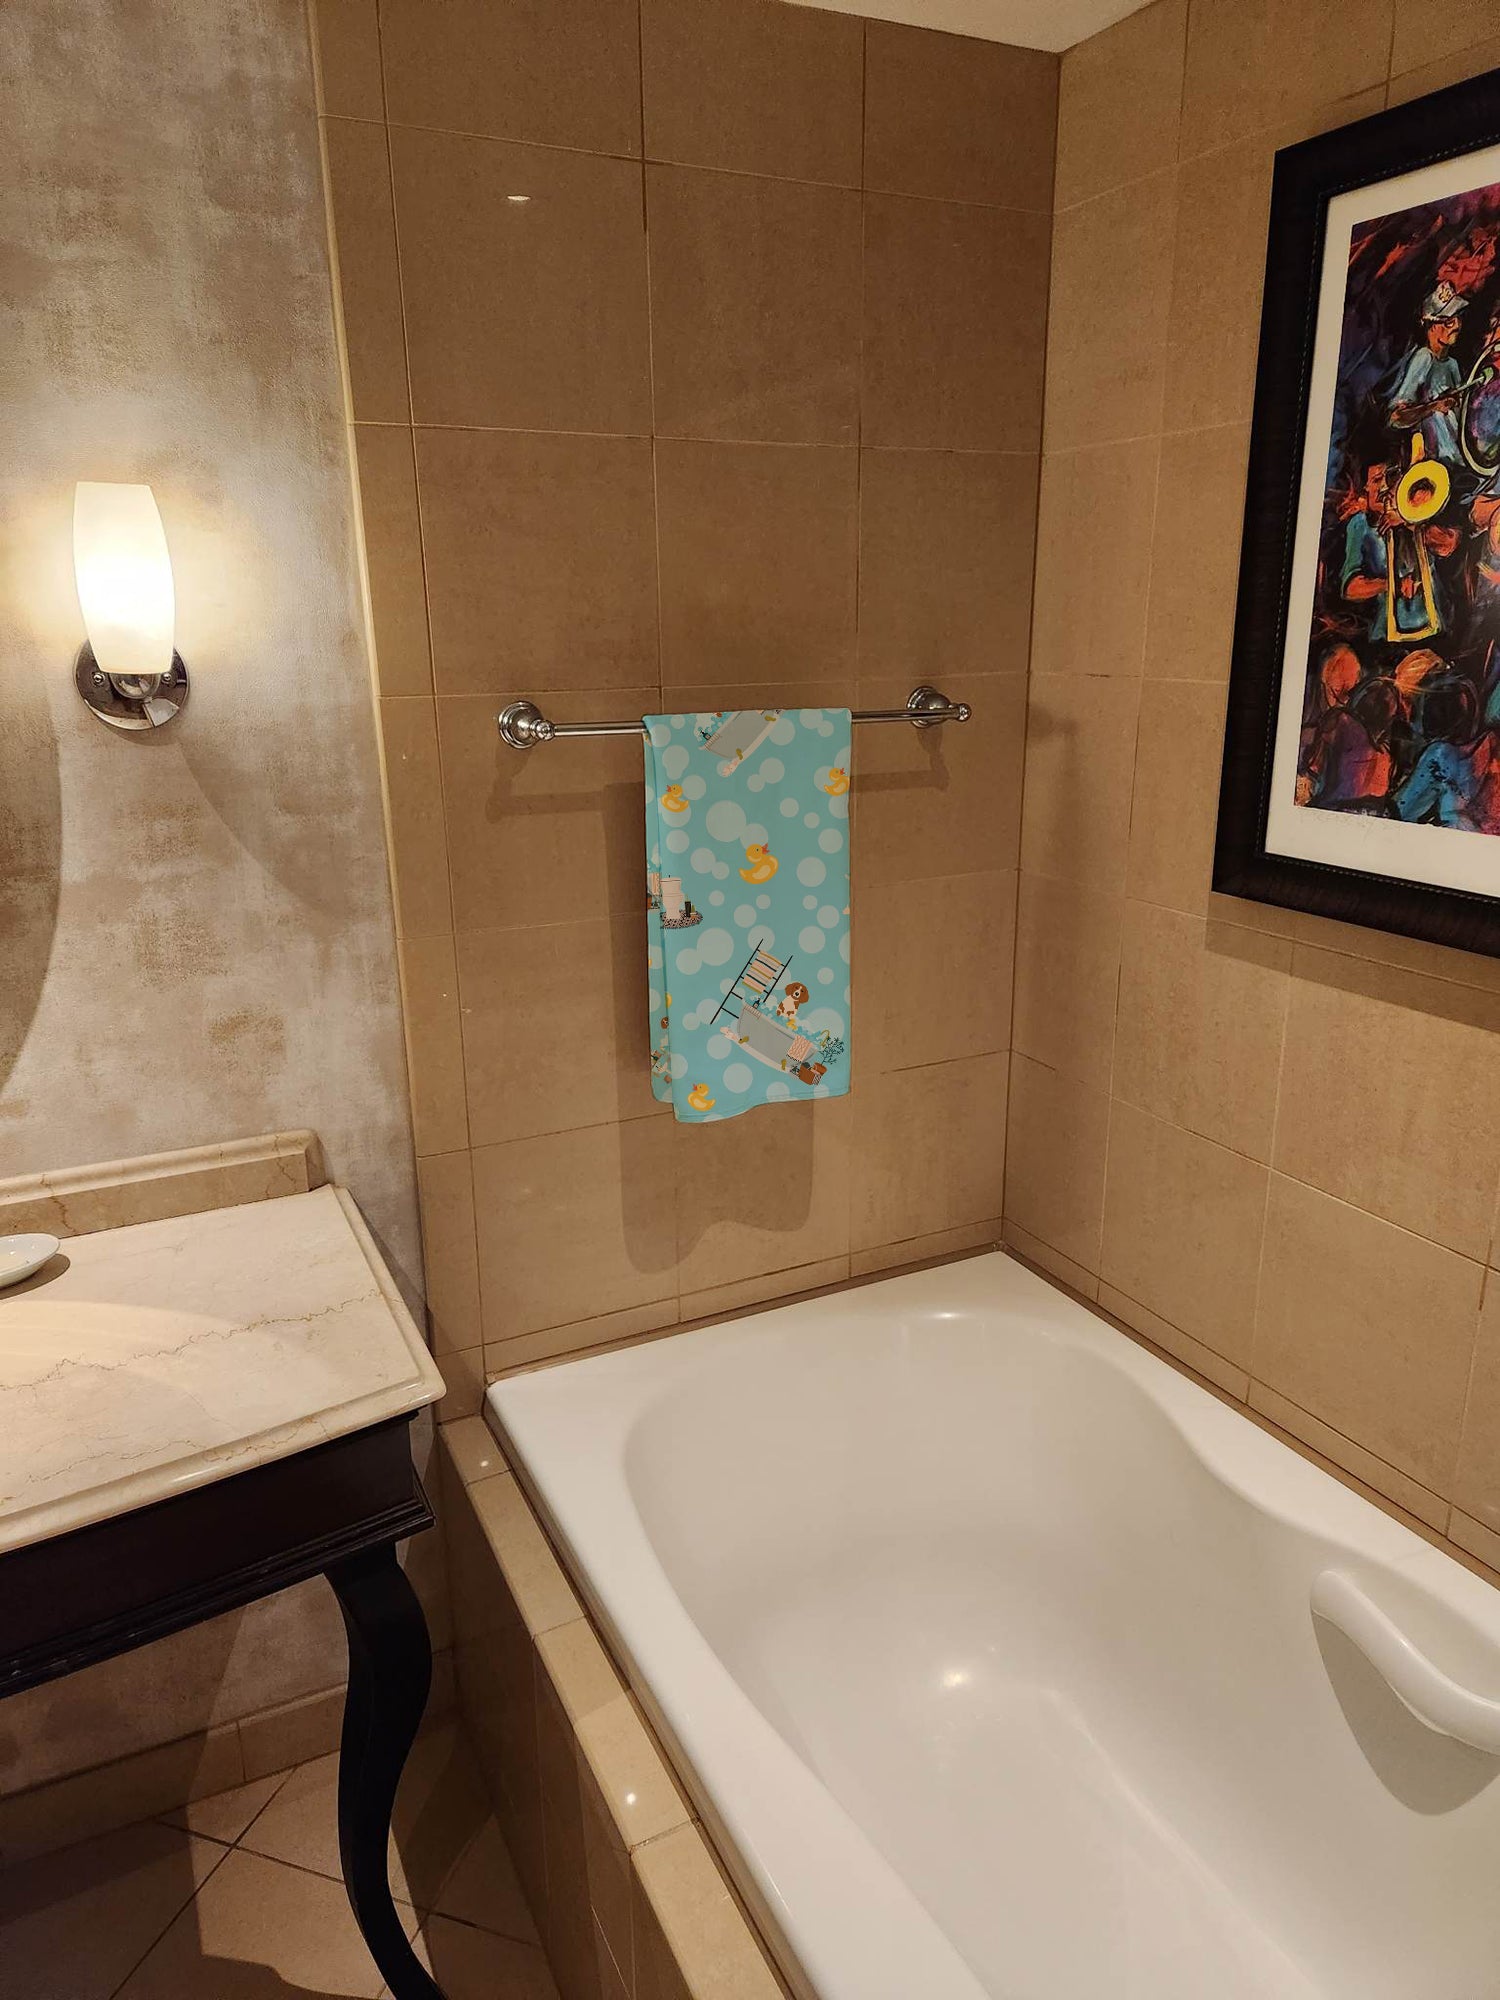 Brittany Spaniel in Bathtub Bath Towel Large